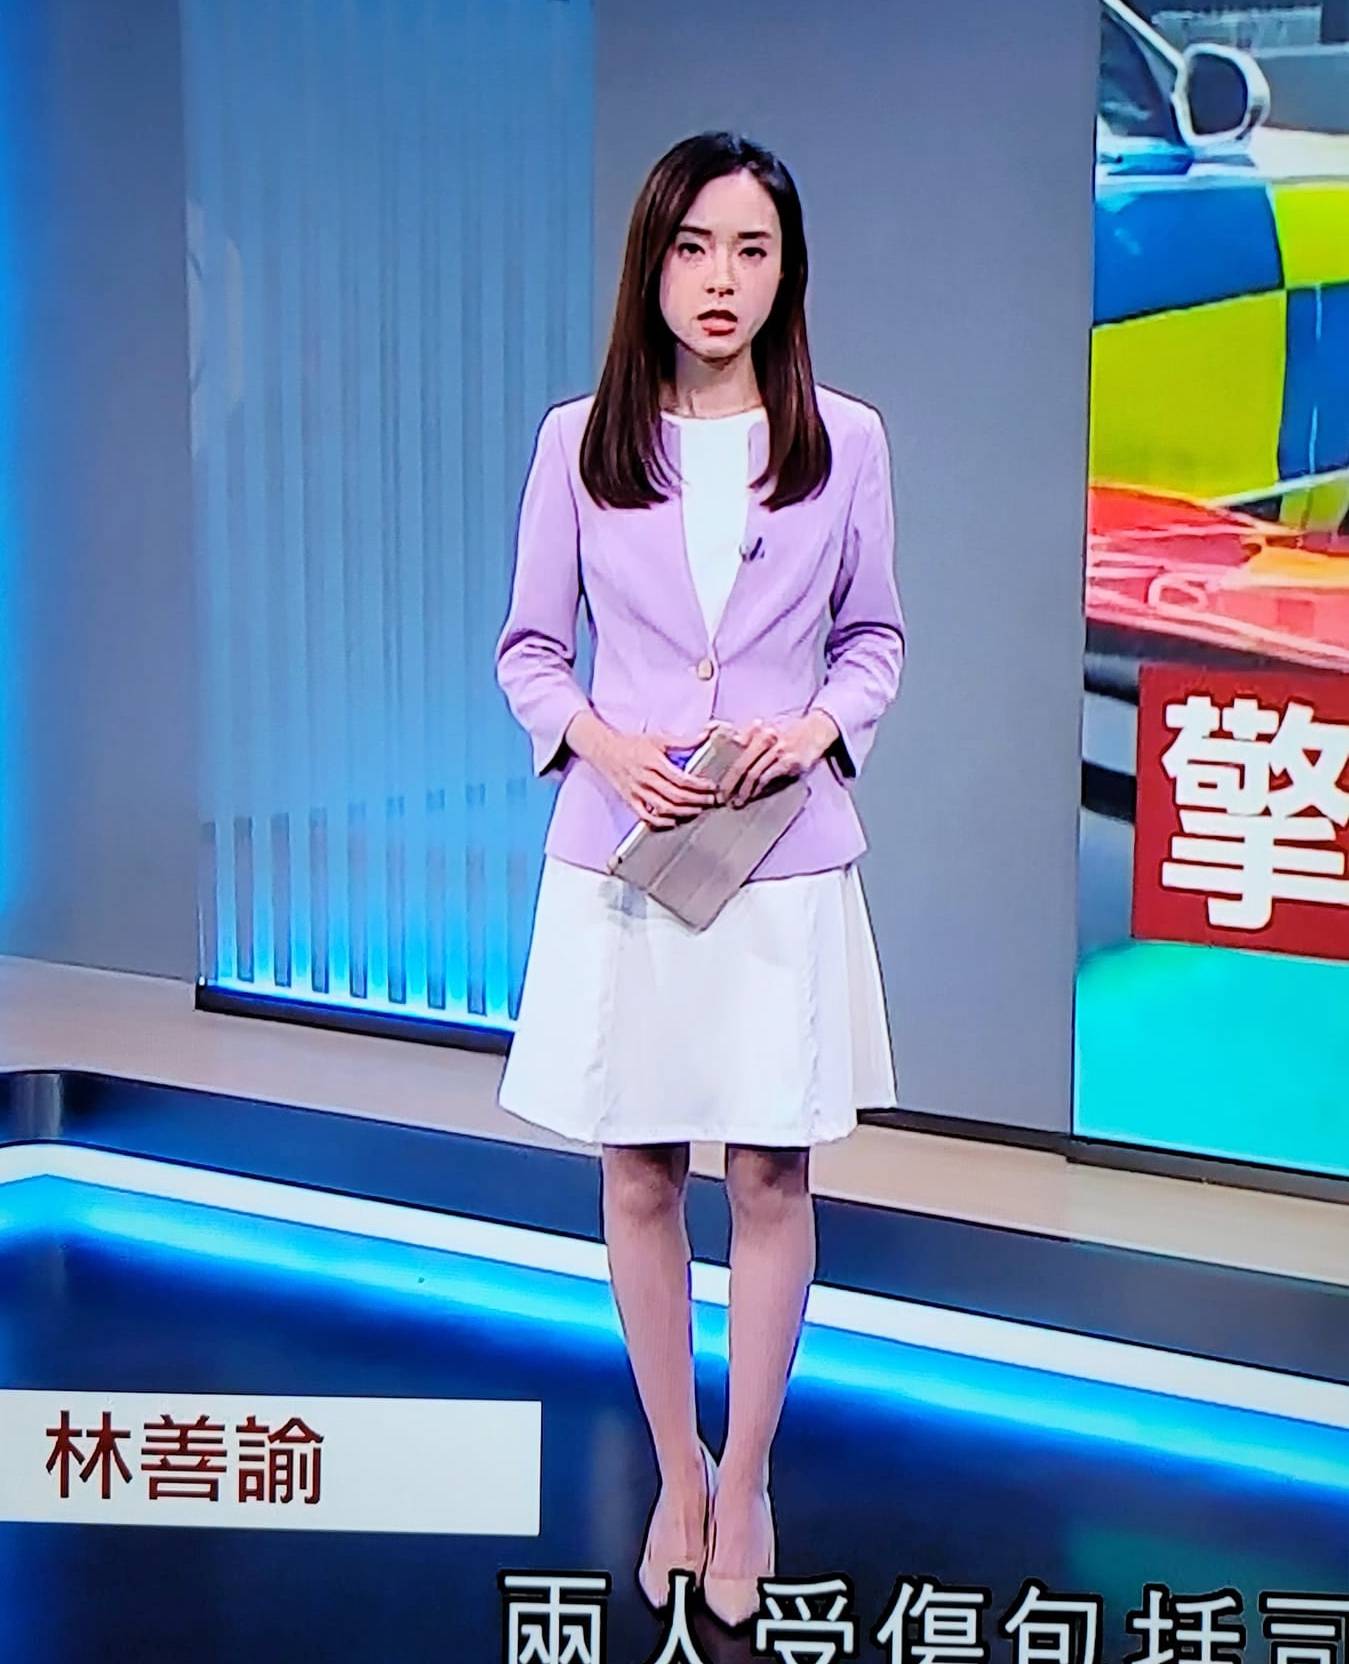 林善懿 林善諭平日報新聞都穿著短裙出鏡，一對白滑美腿受到不少網民讚賞。